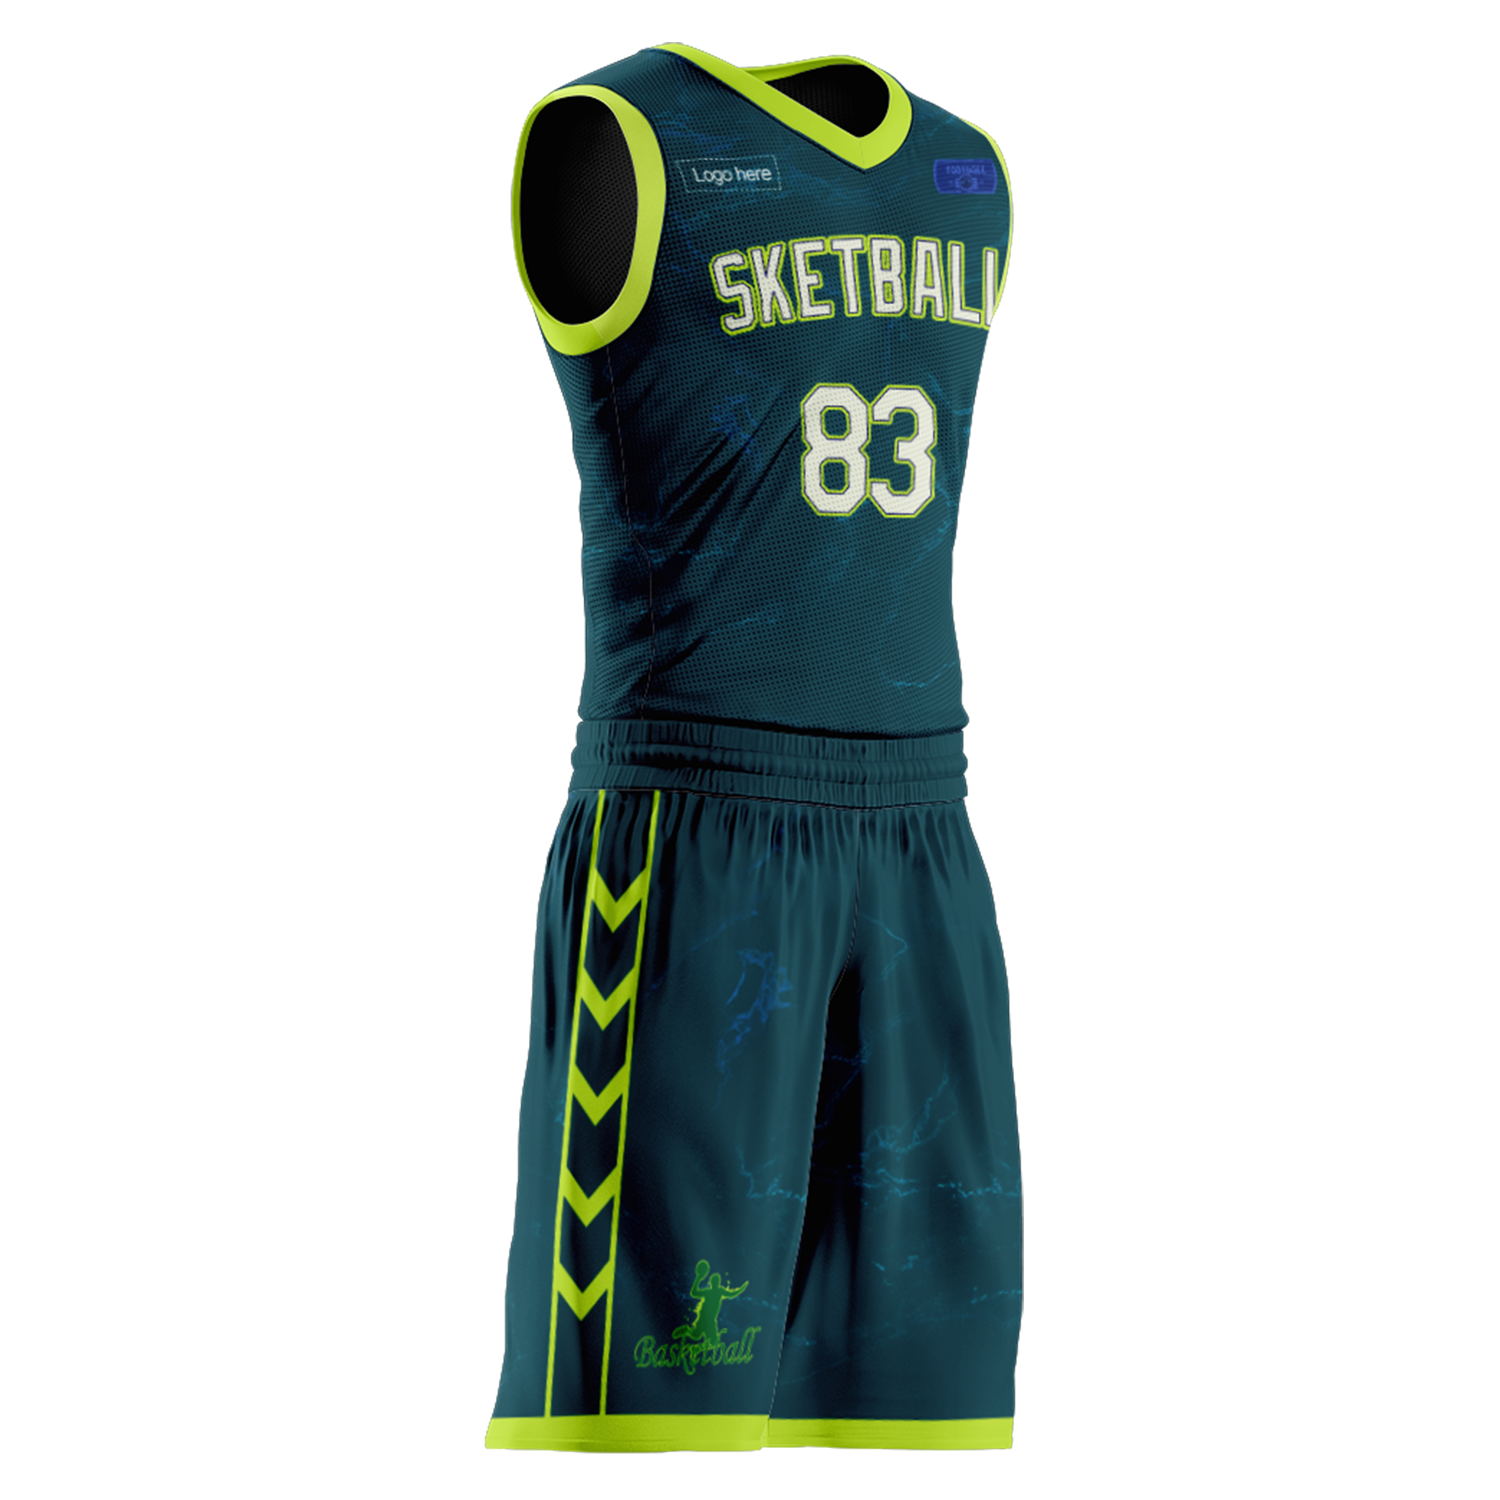 Kundenspezifische Australien-Team-Basketballanzüge